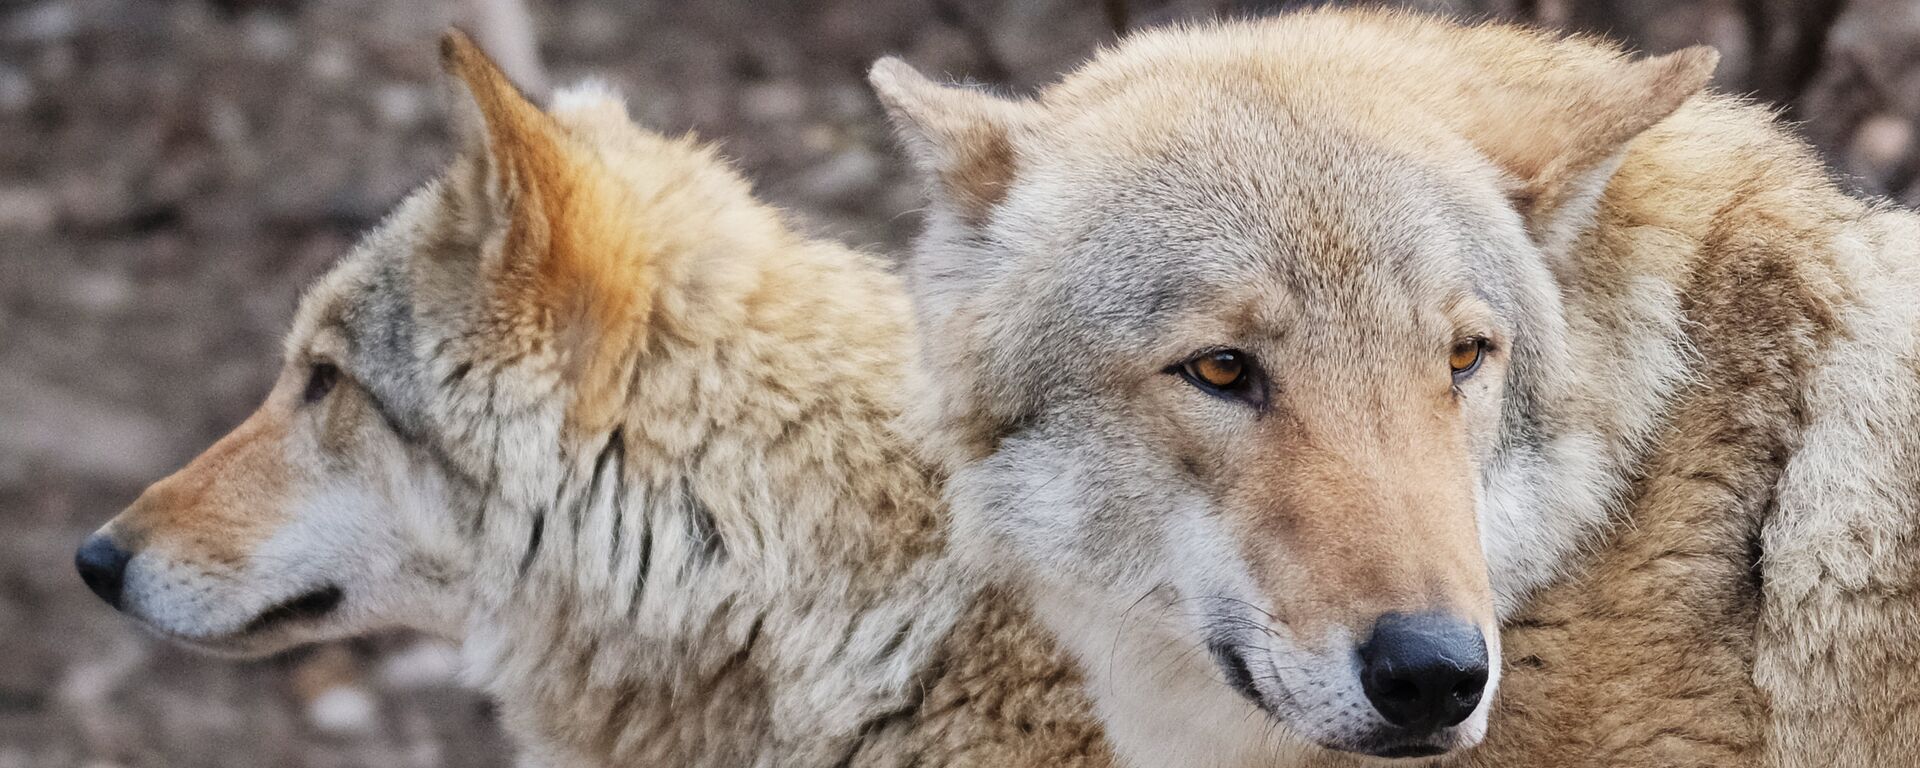 Европейские волки (canis lupus) в Московском зоопарке - Sputnik Латвия, 1920, 09.08.2021